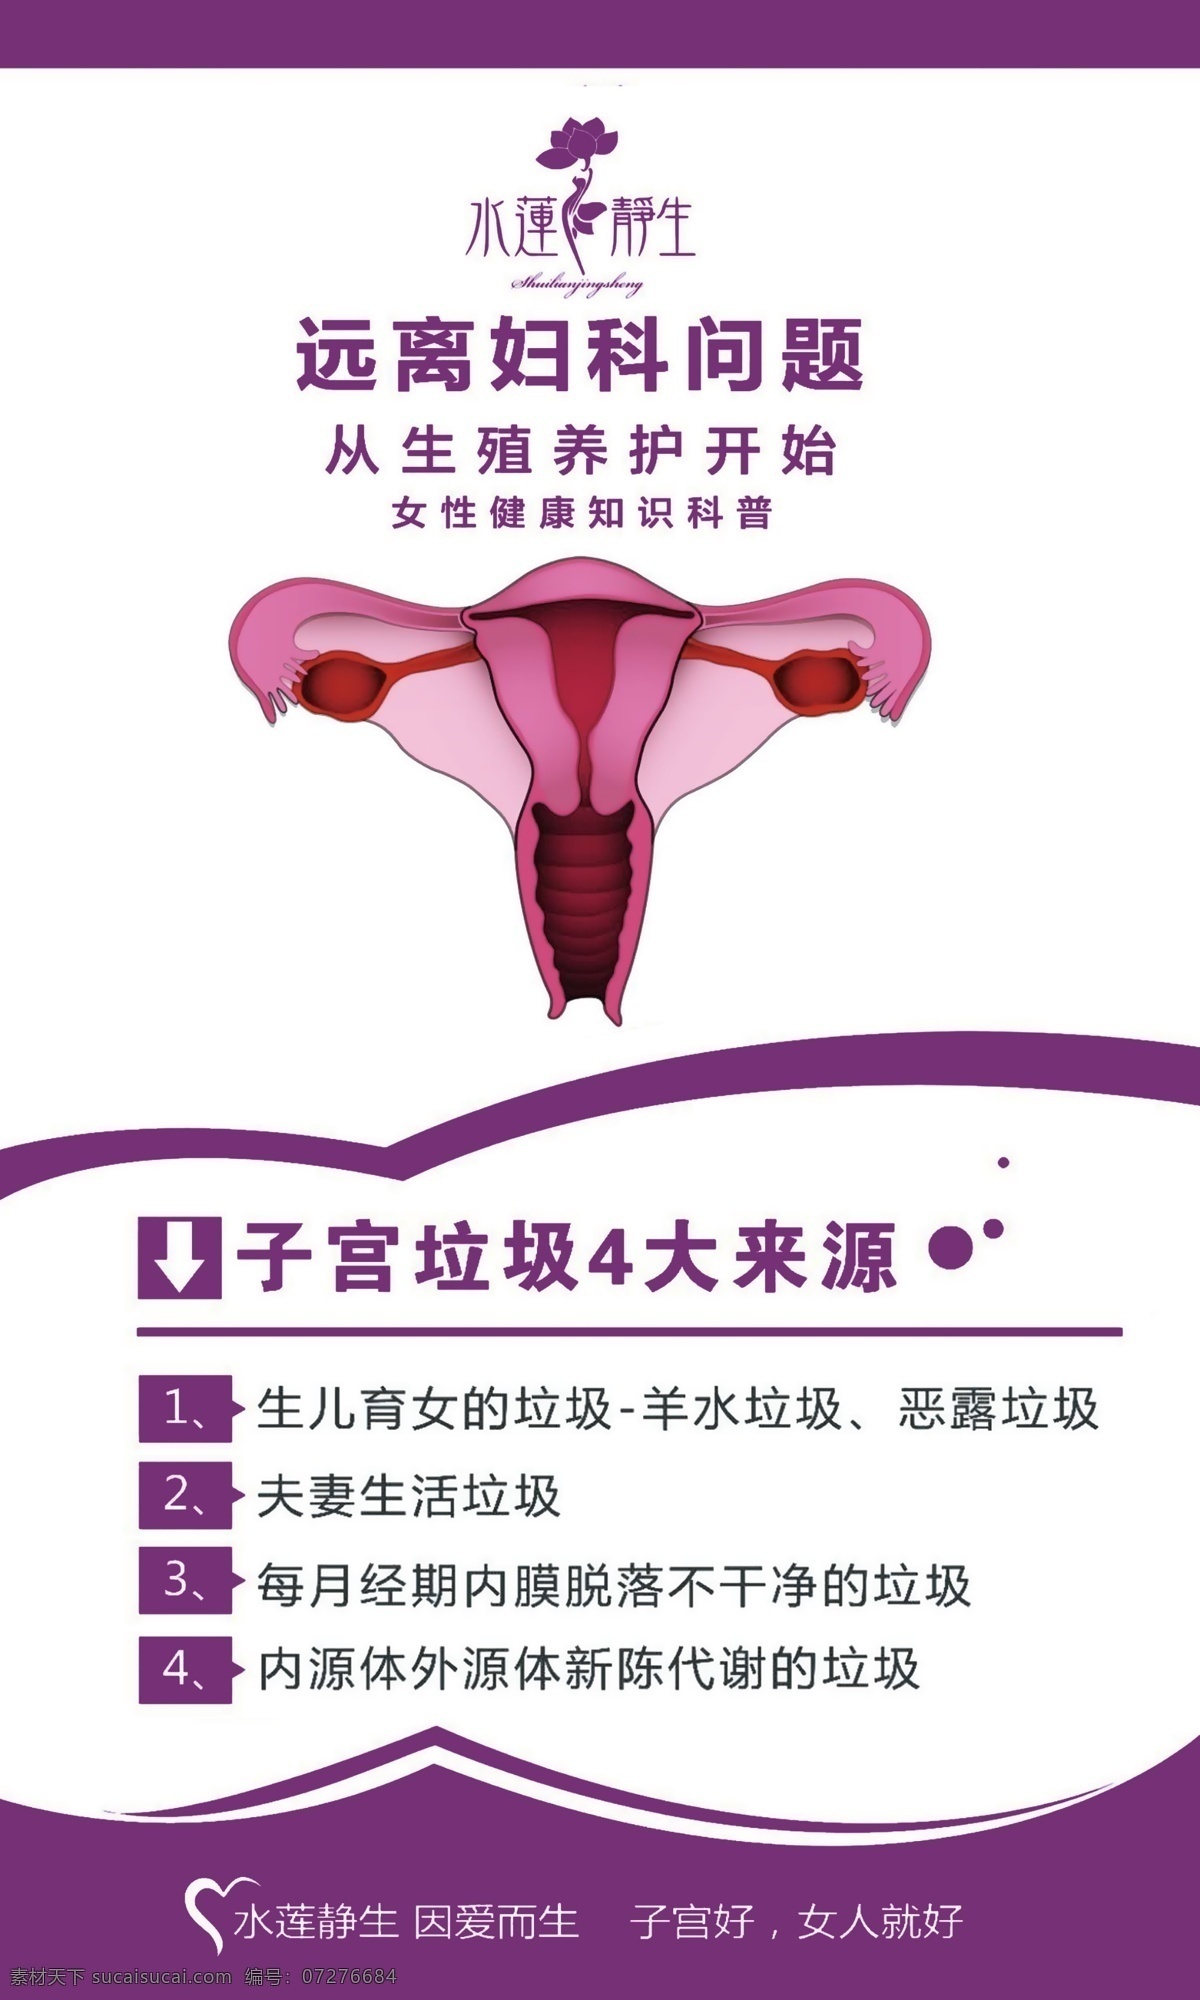 妇科 生殖养护 子宫 修复 水莲静生 室外广告设计